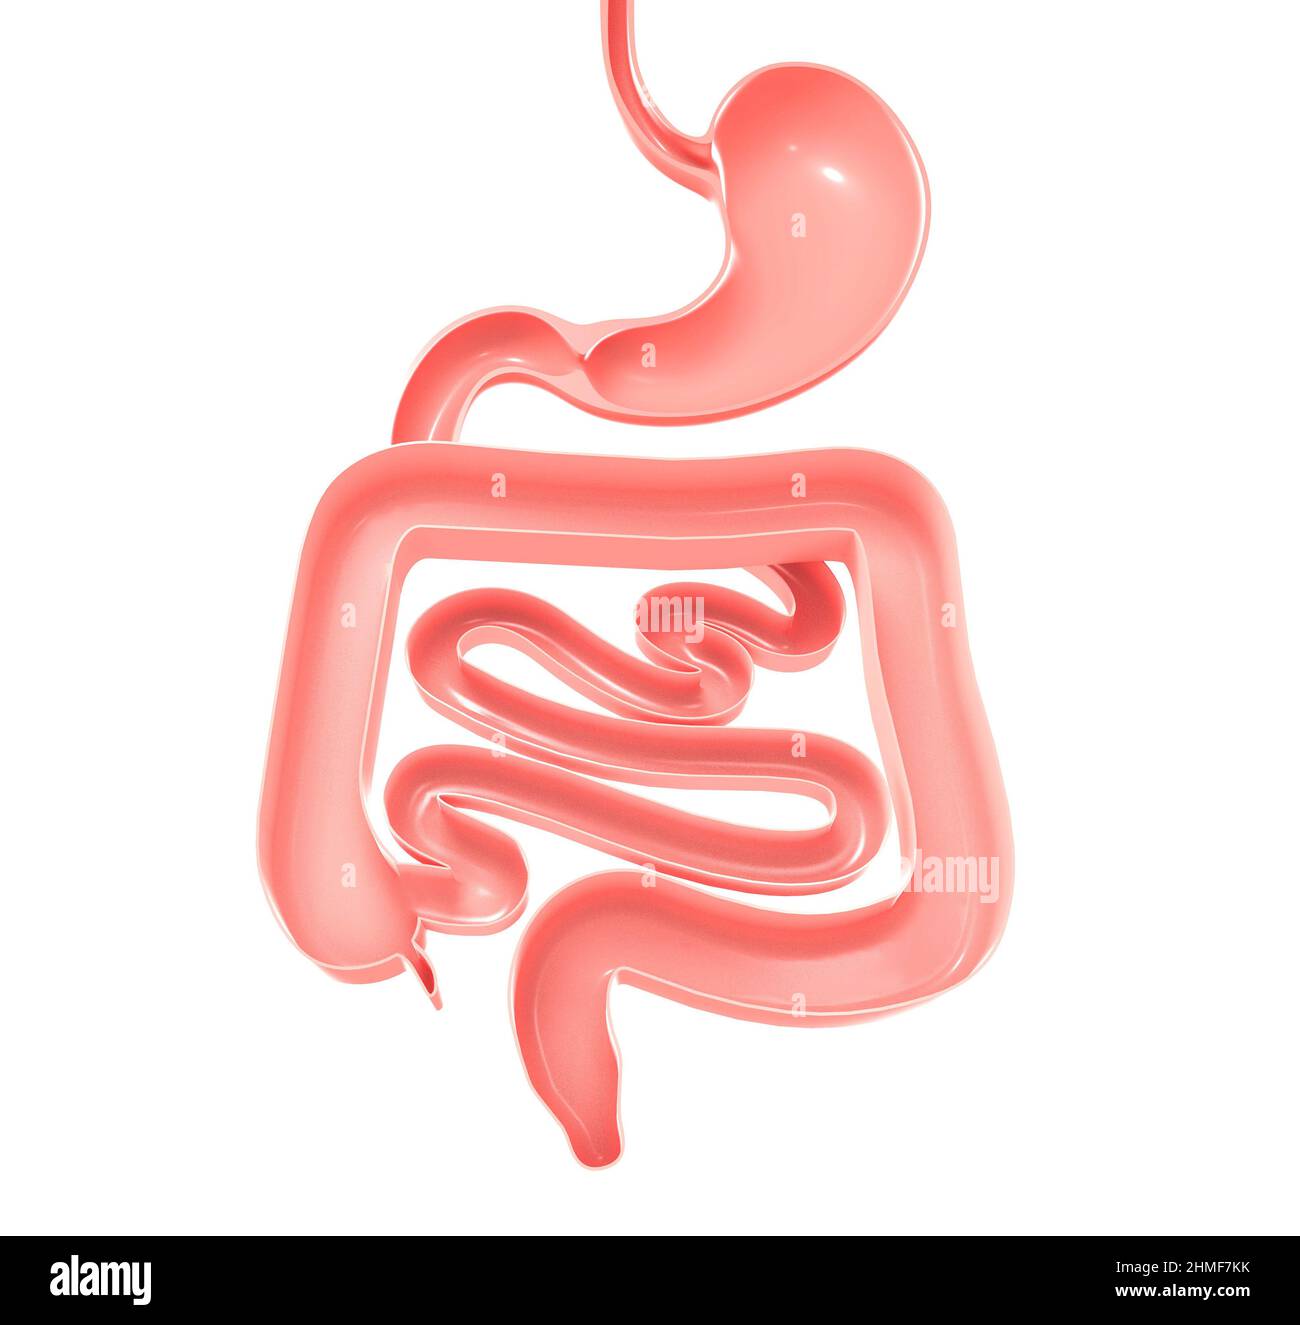 Ilustración anatómica 3D del sistema digestivo. Estómago, intestino grueso y pequeño. Mostrando el interior abierto. Foto de stock